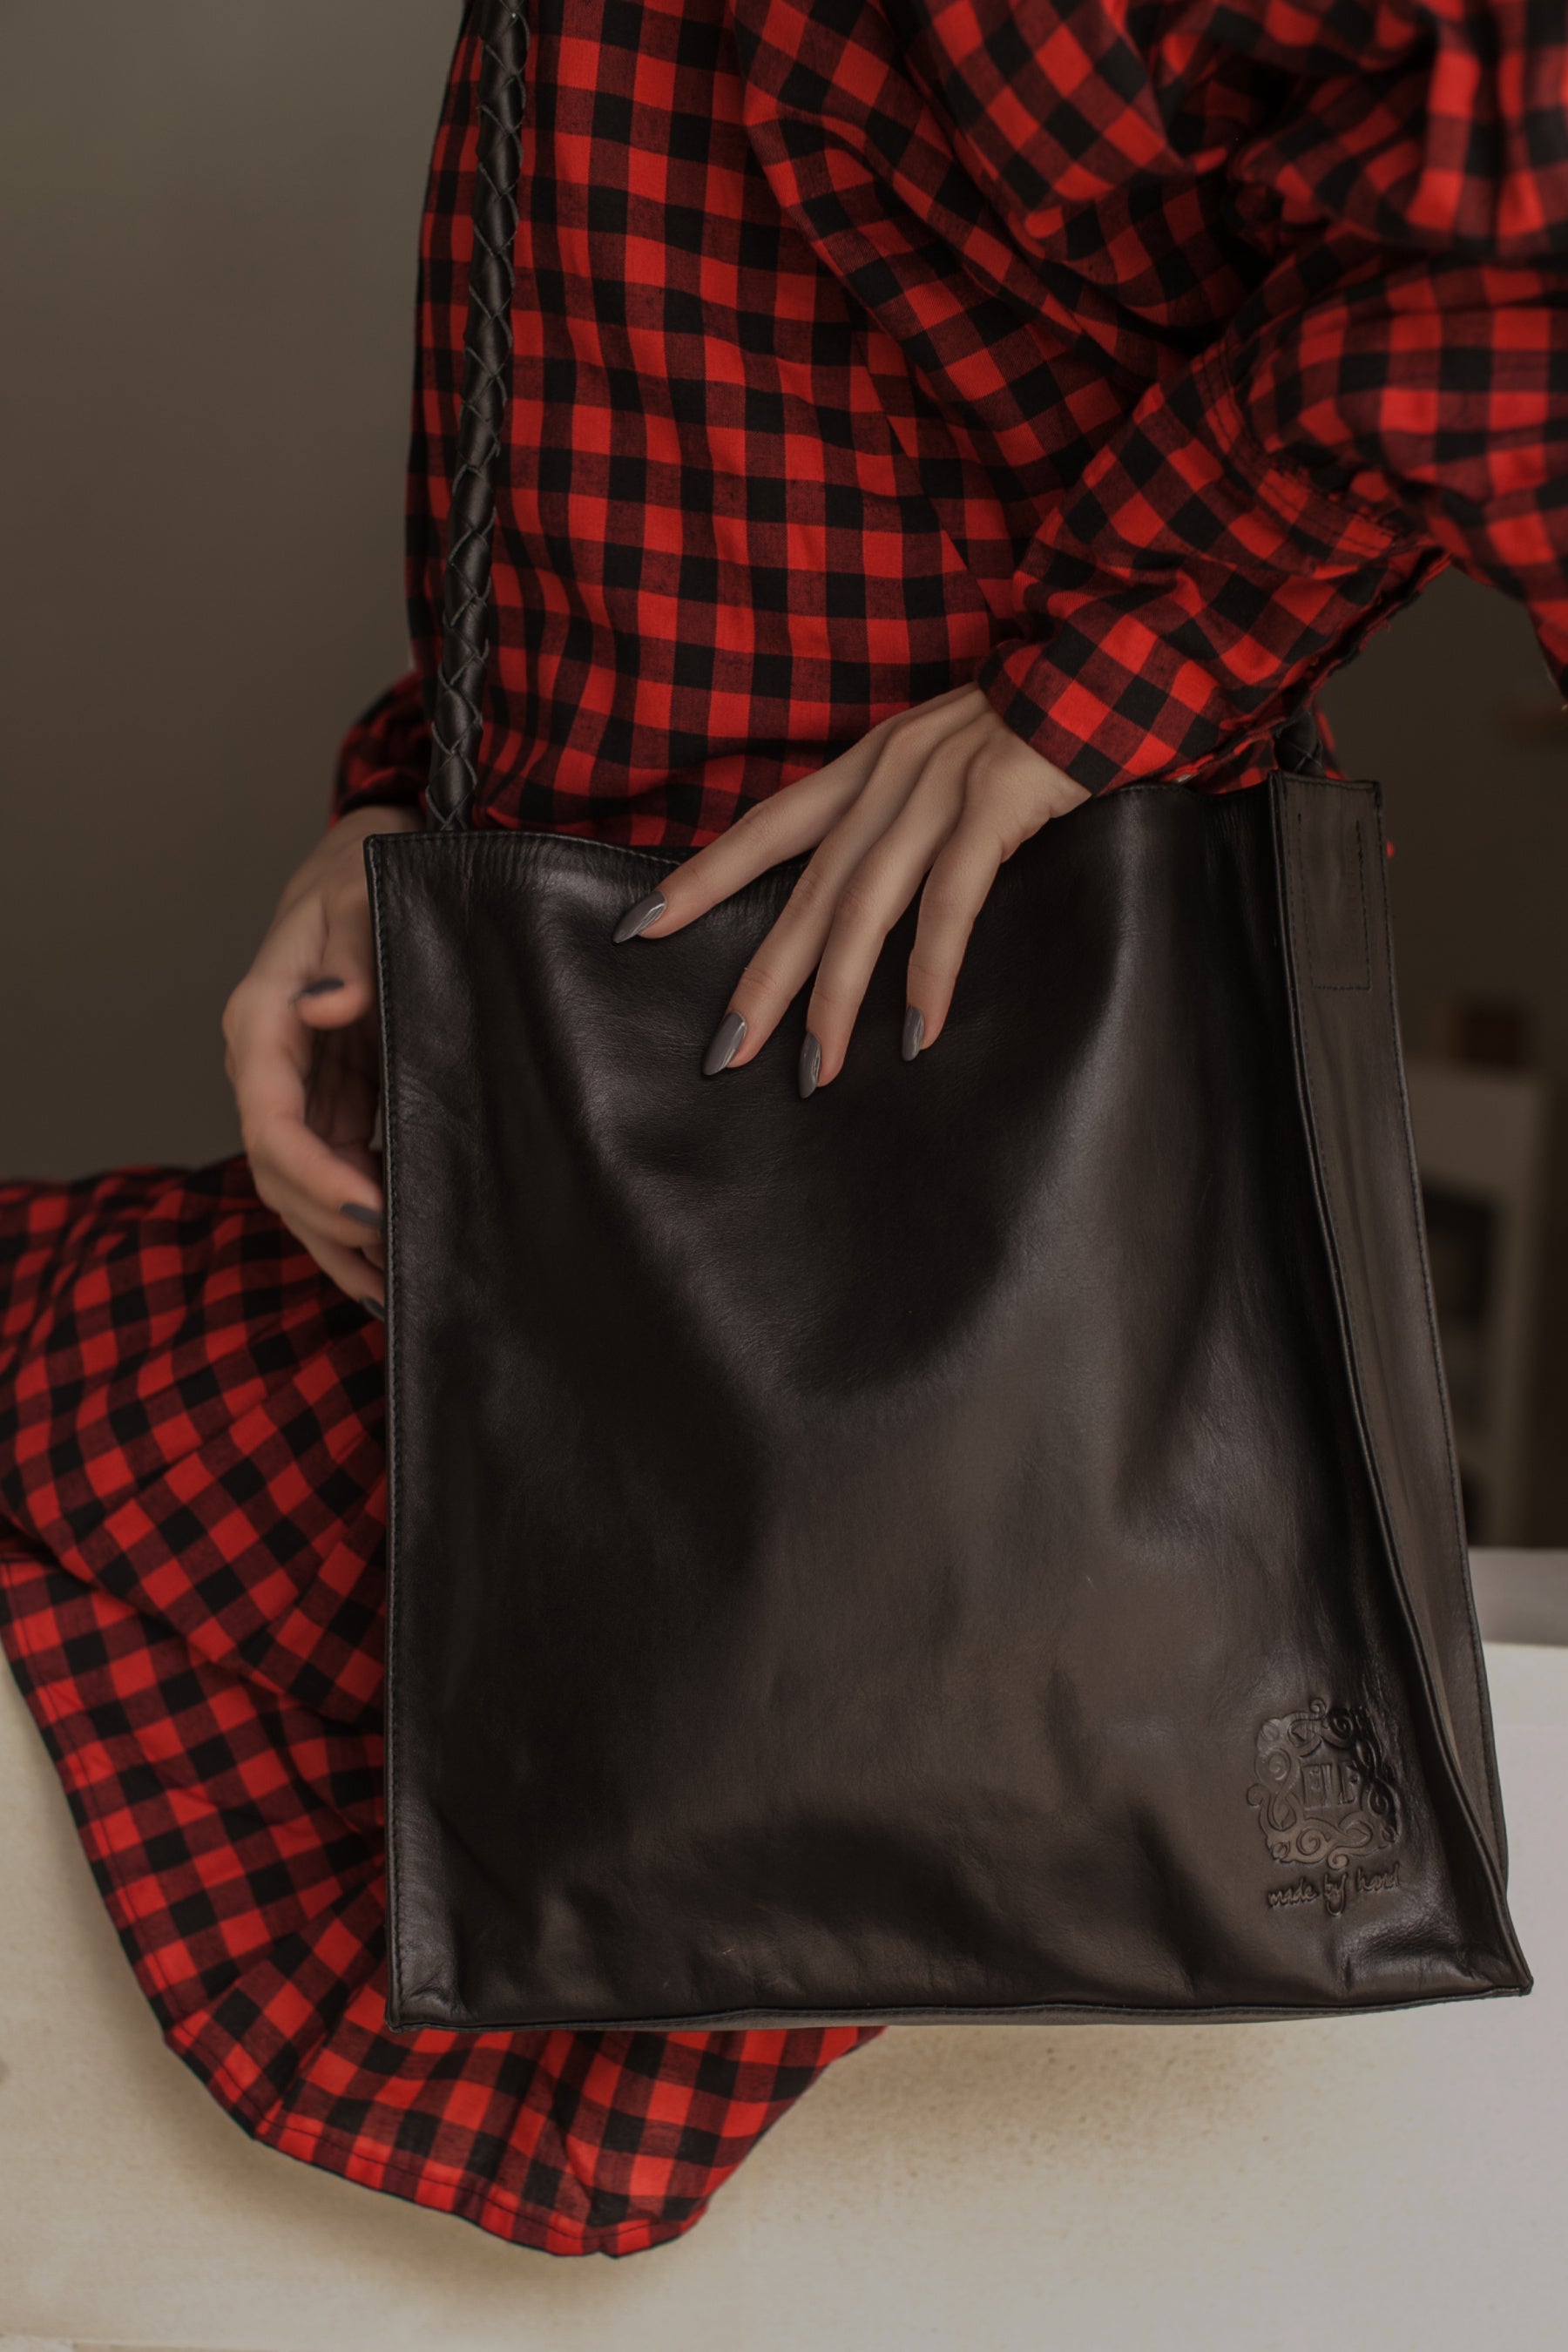 Day Leather Shoulder Bag by ELF